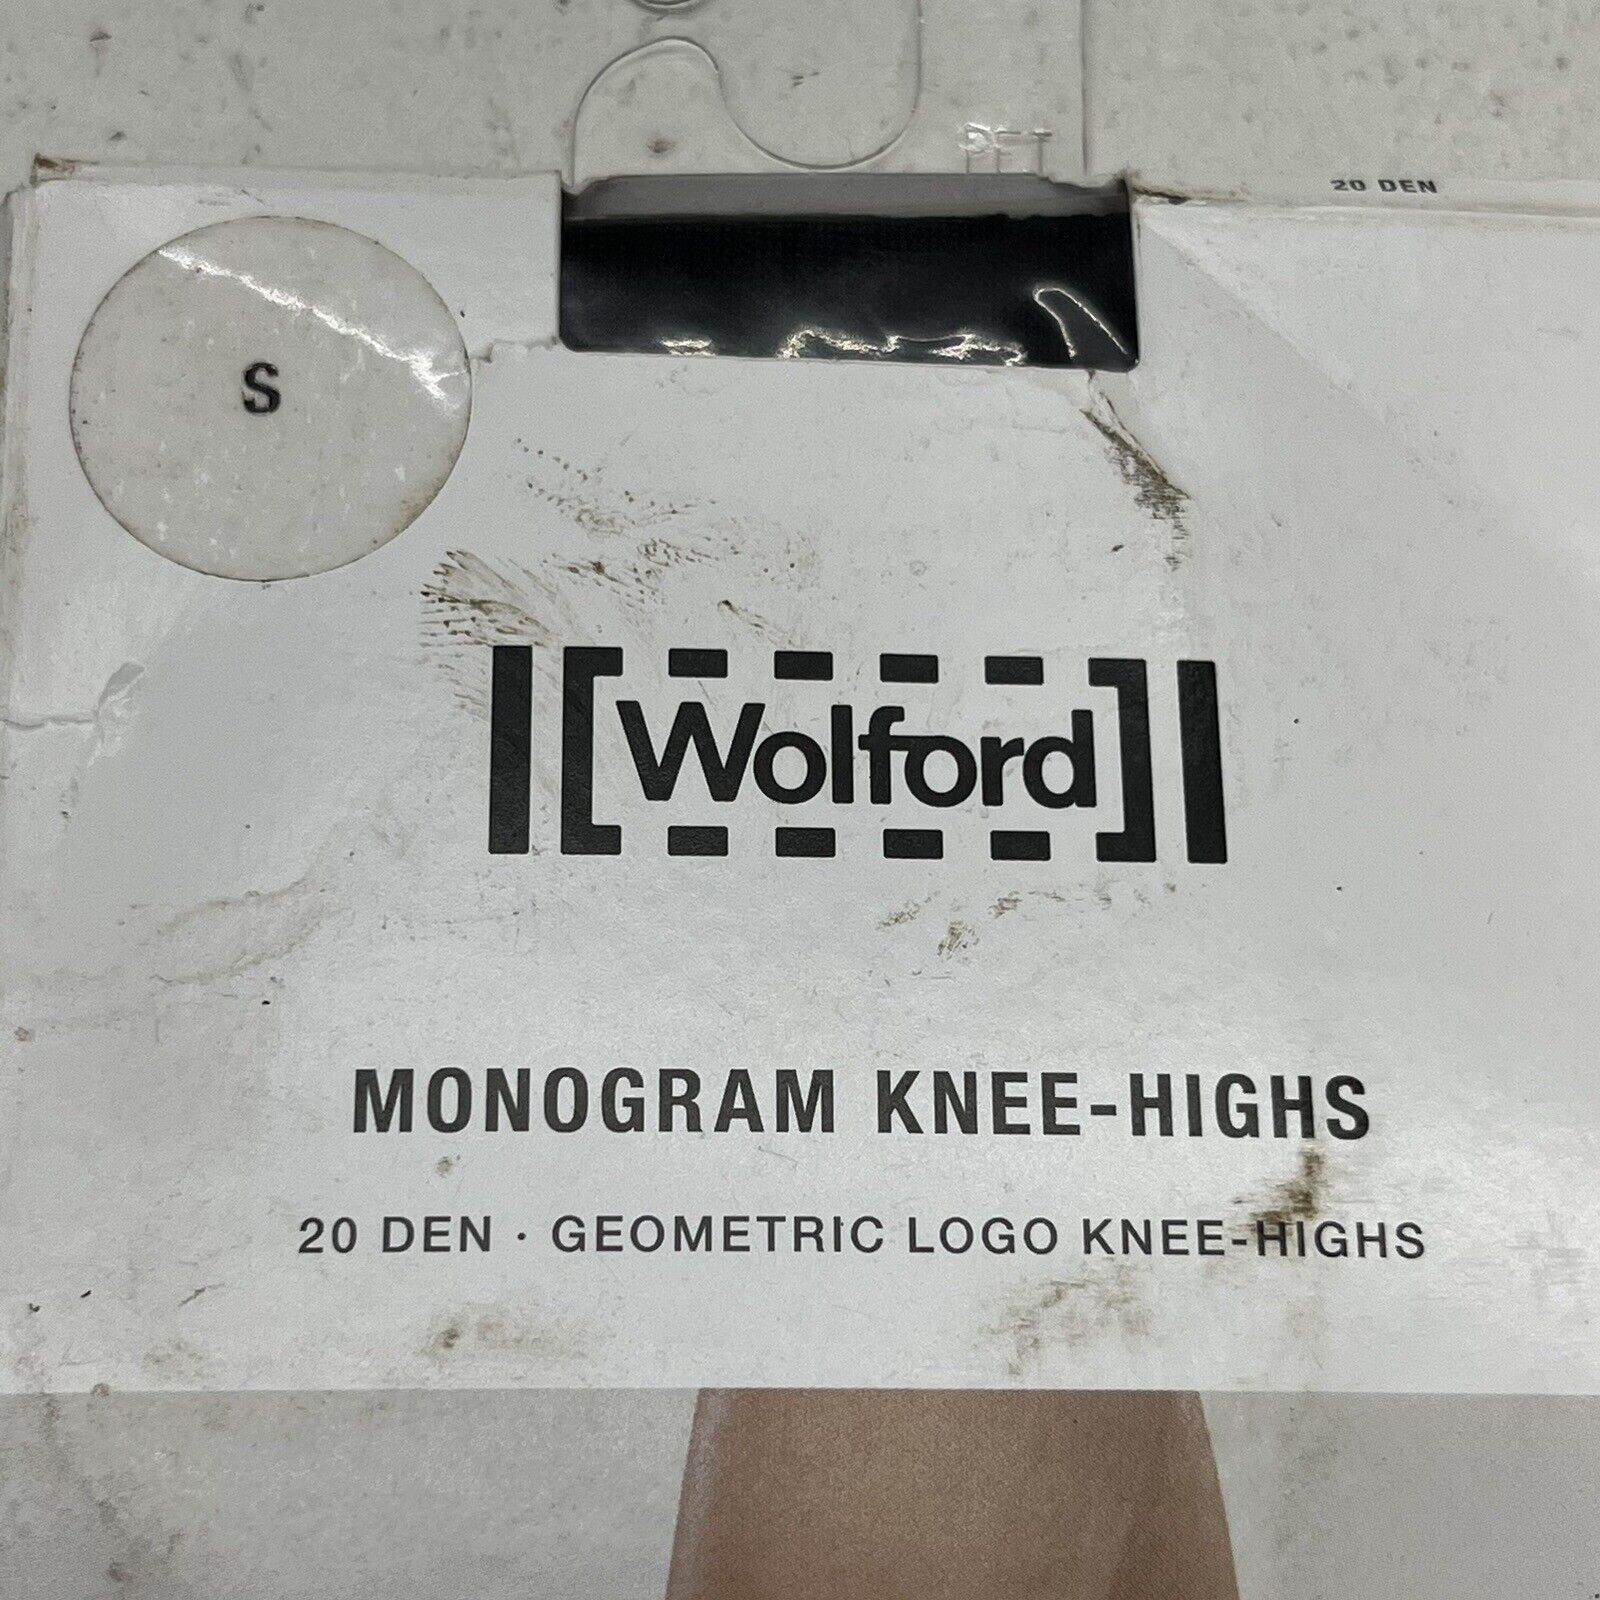 Monogram Knee-Highs